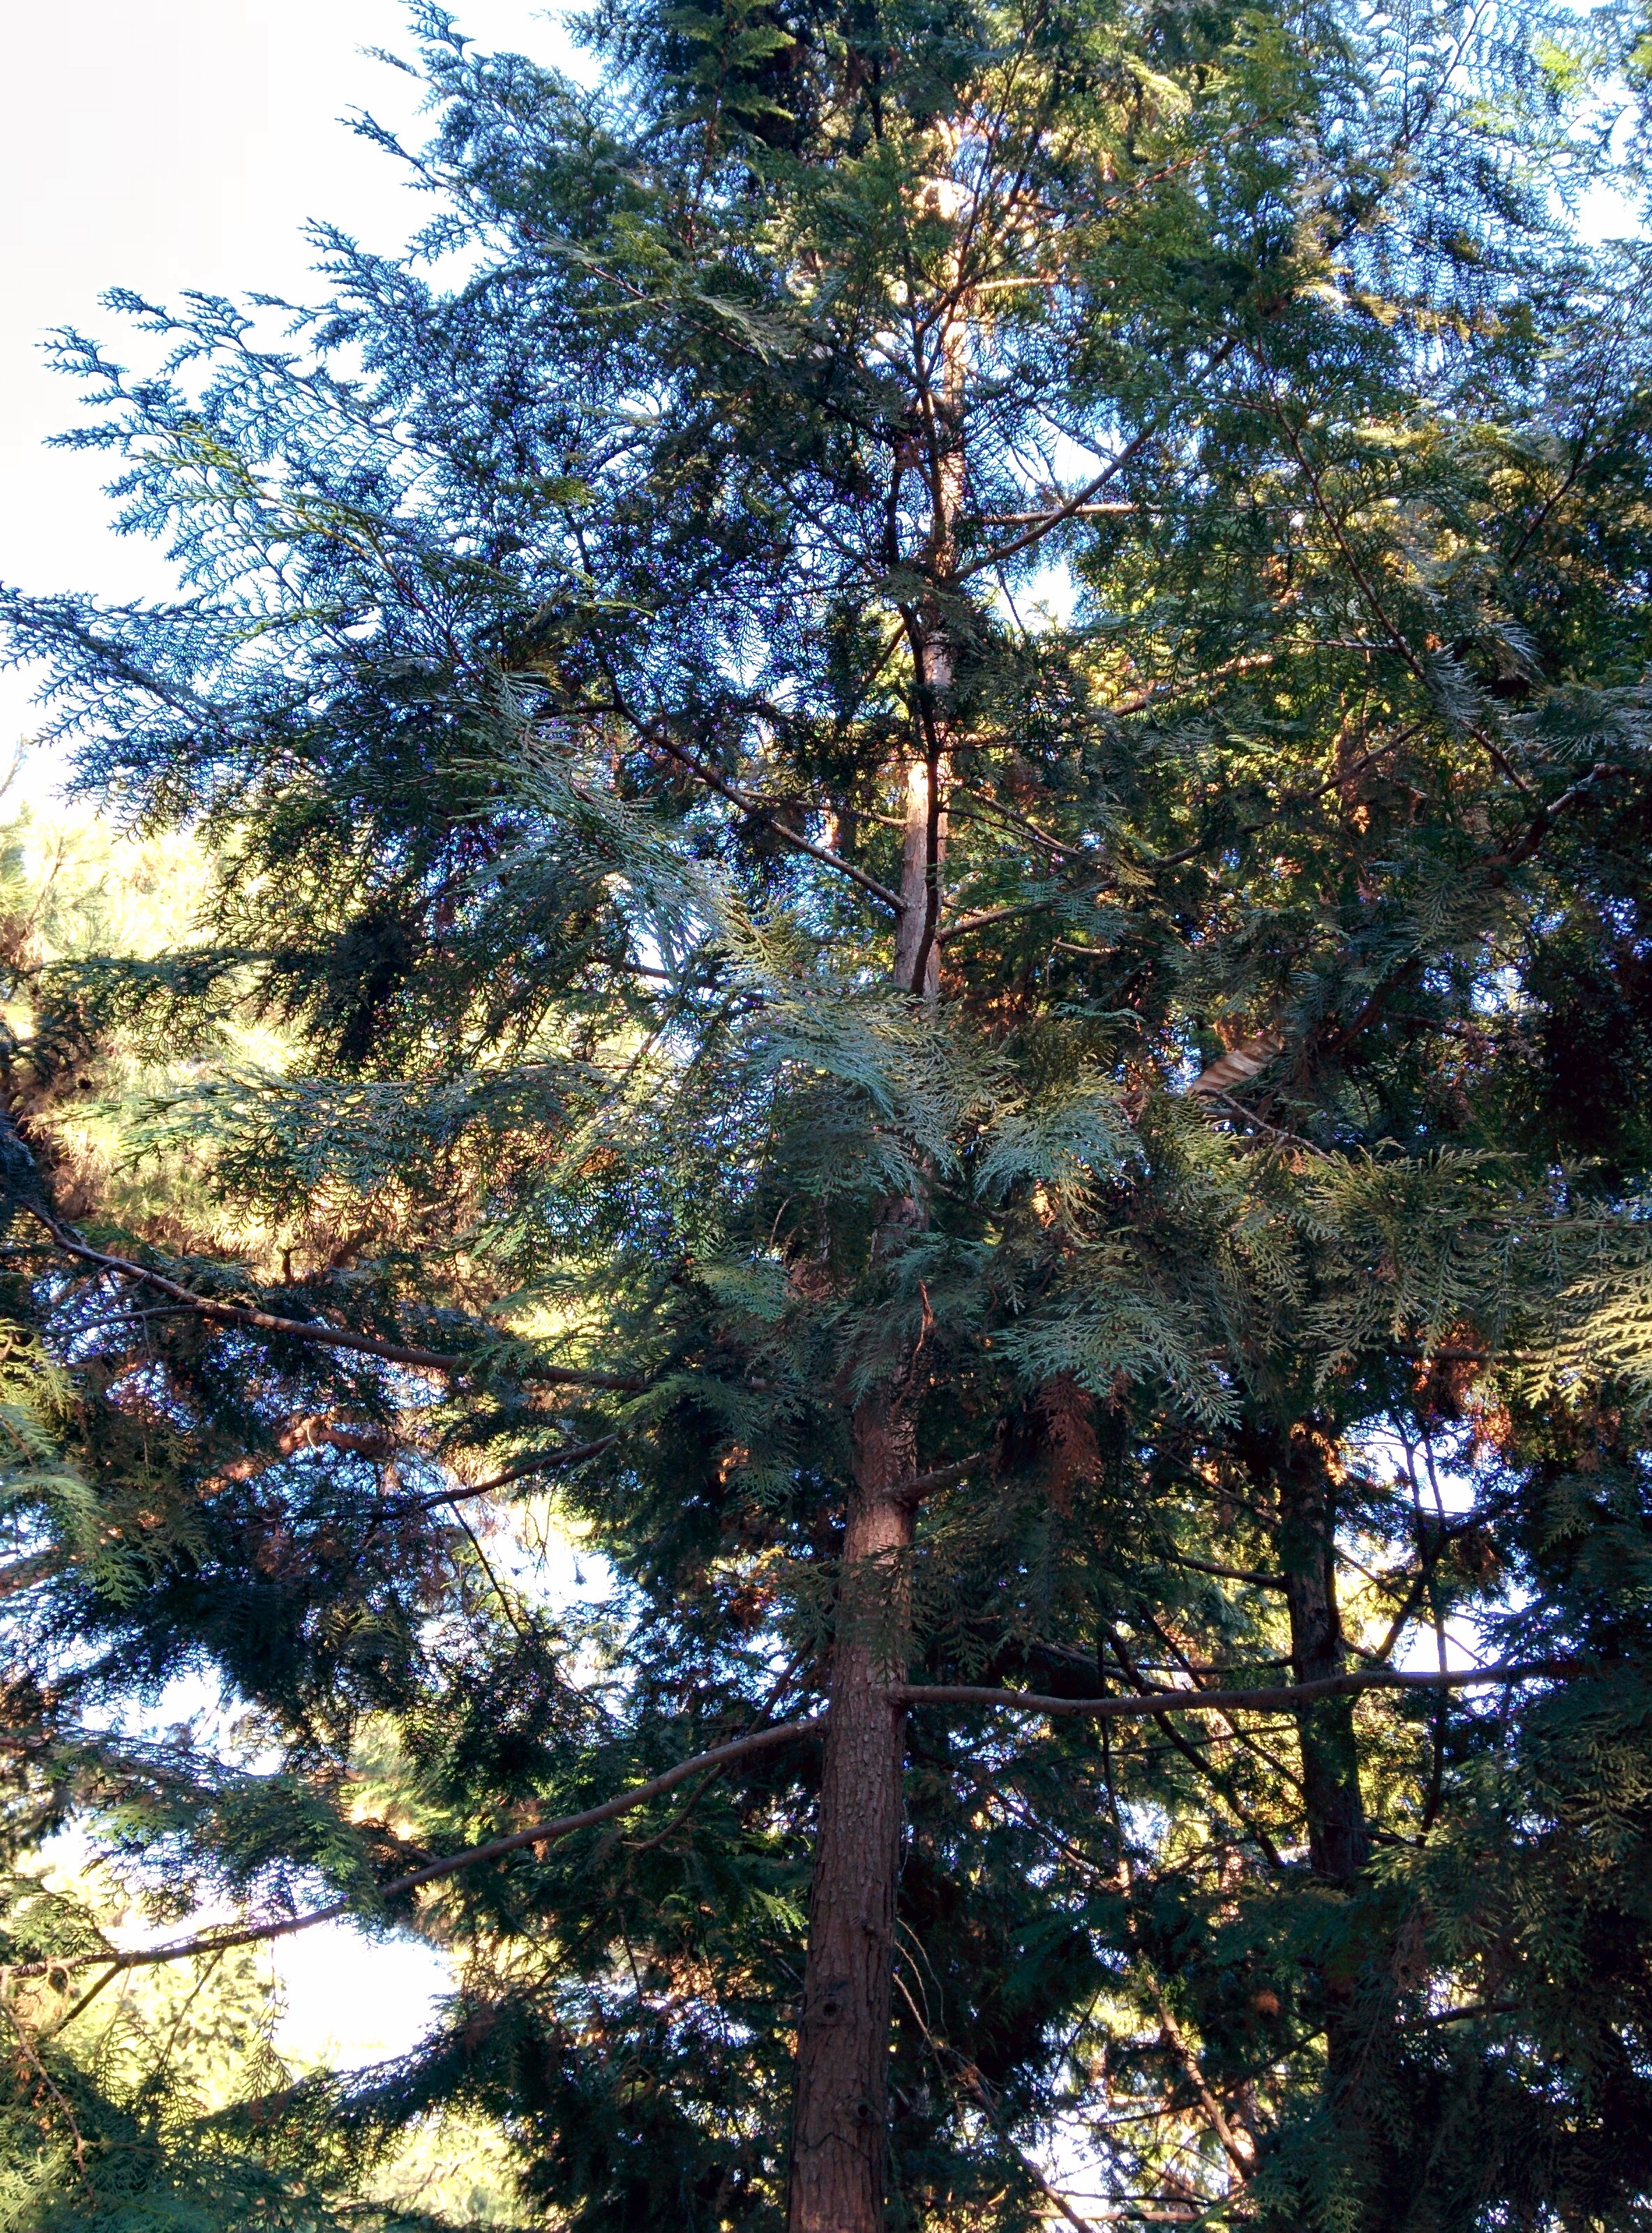 IMG_20151228_142305.jpg 늘푸른 편백나무